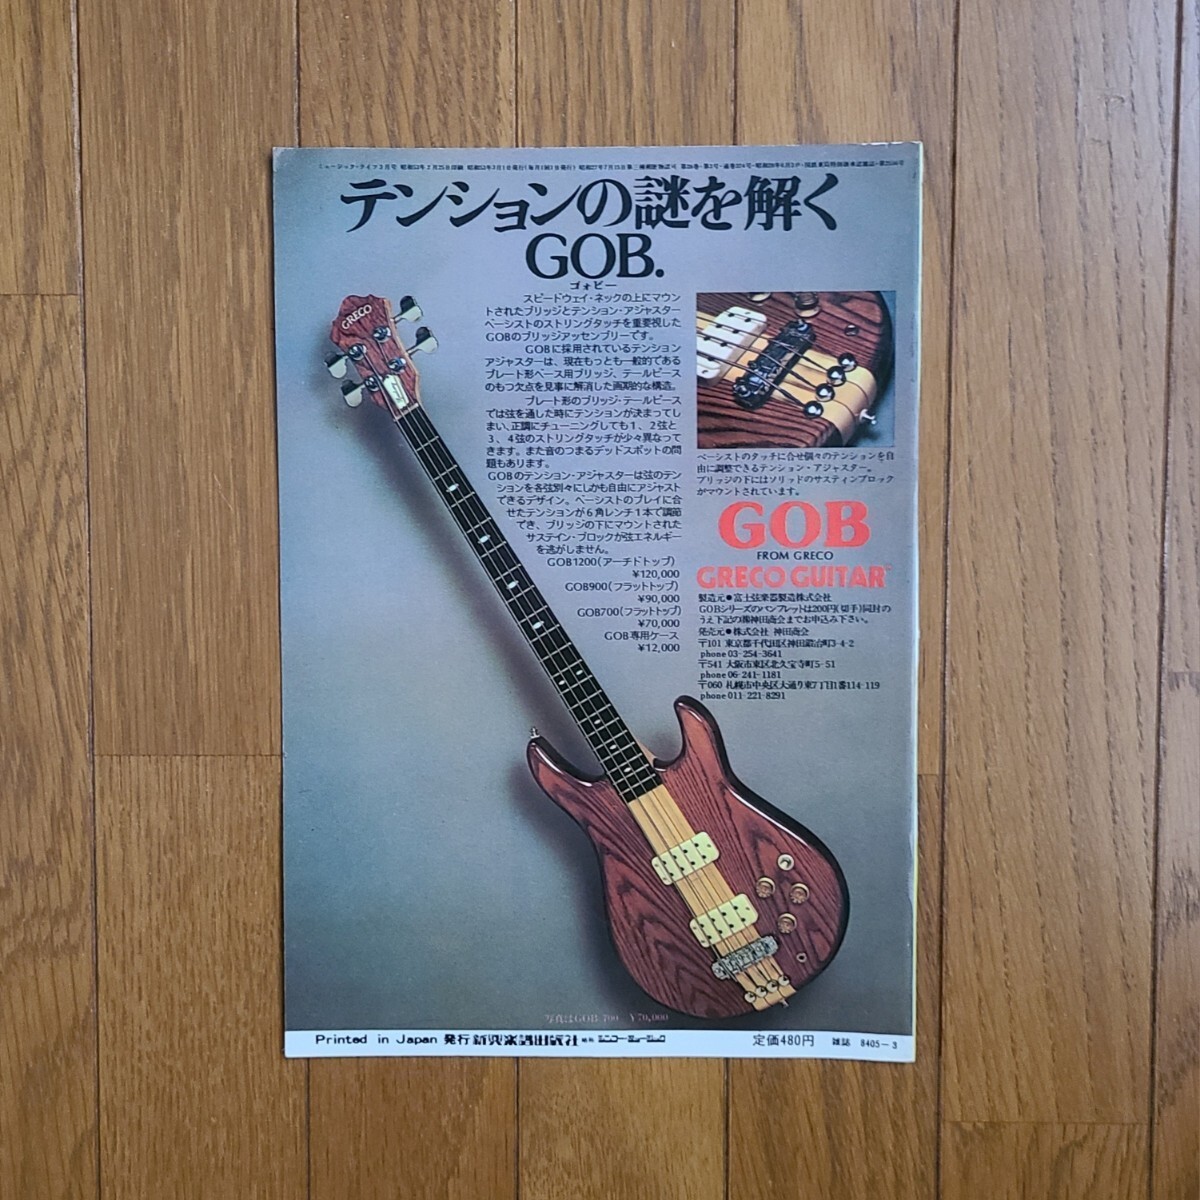 GRECO グレコ ベースギター広告 1977 1978 1979年【切り抜き】GRECO PMB800 TB900 PB700S GOB GOBⅡ 雑誌裏表紙/傷みありの画像5